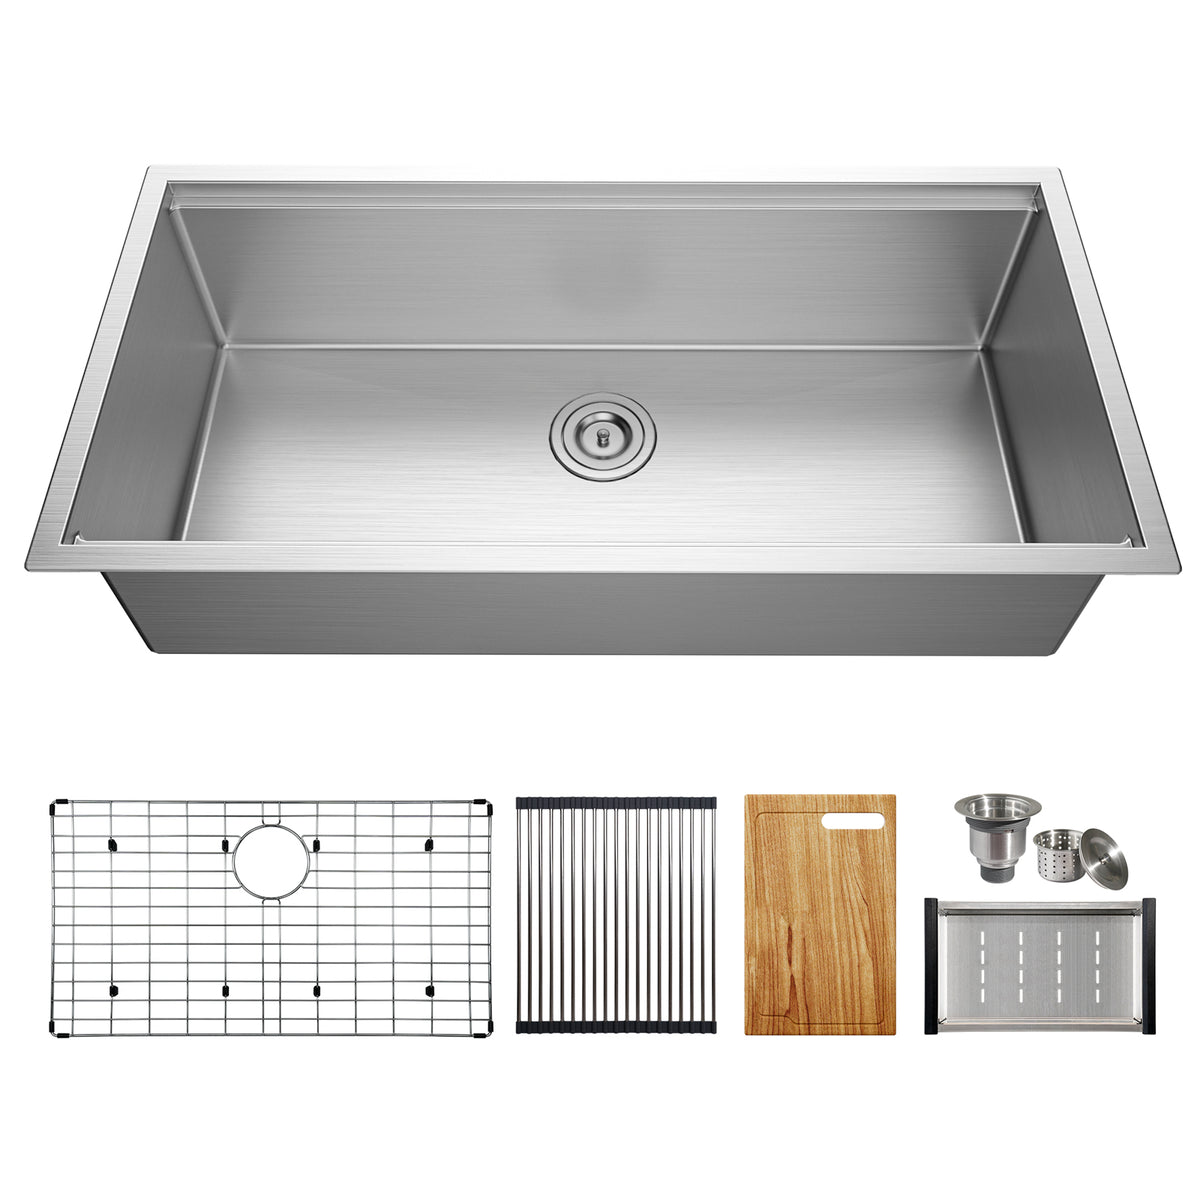 TECASA Undermount Deep Single Bowl—36 inch Workstation Kitchen Sink